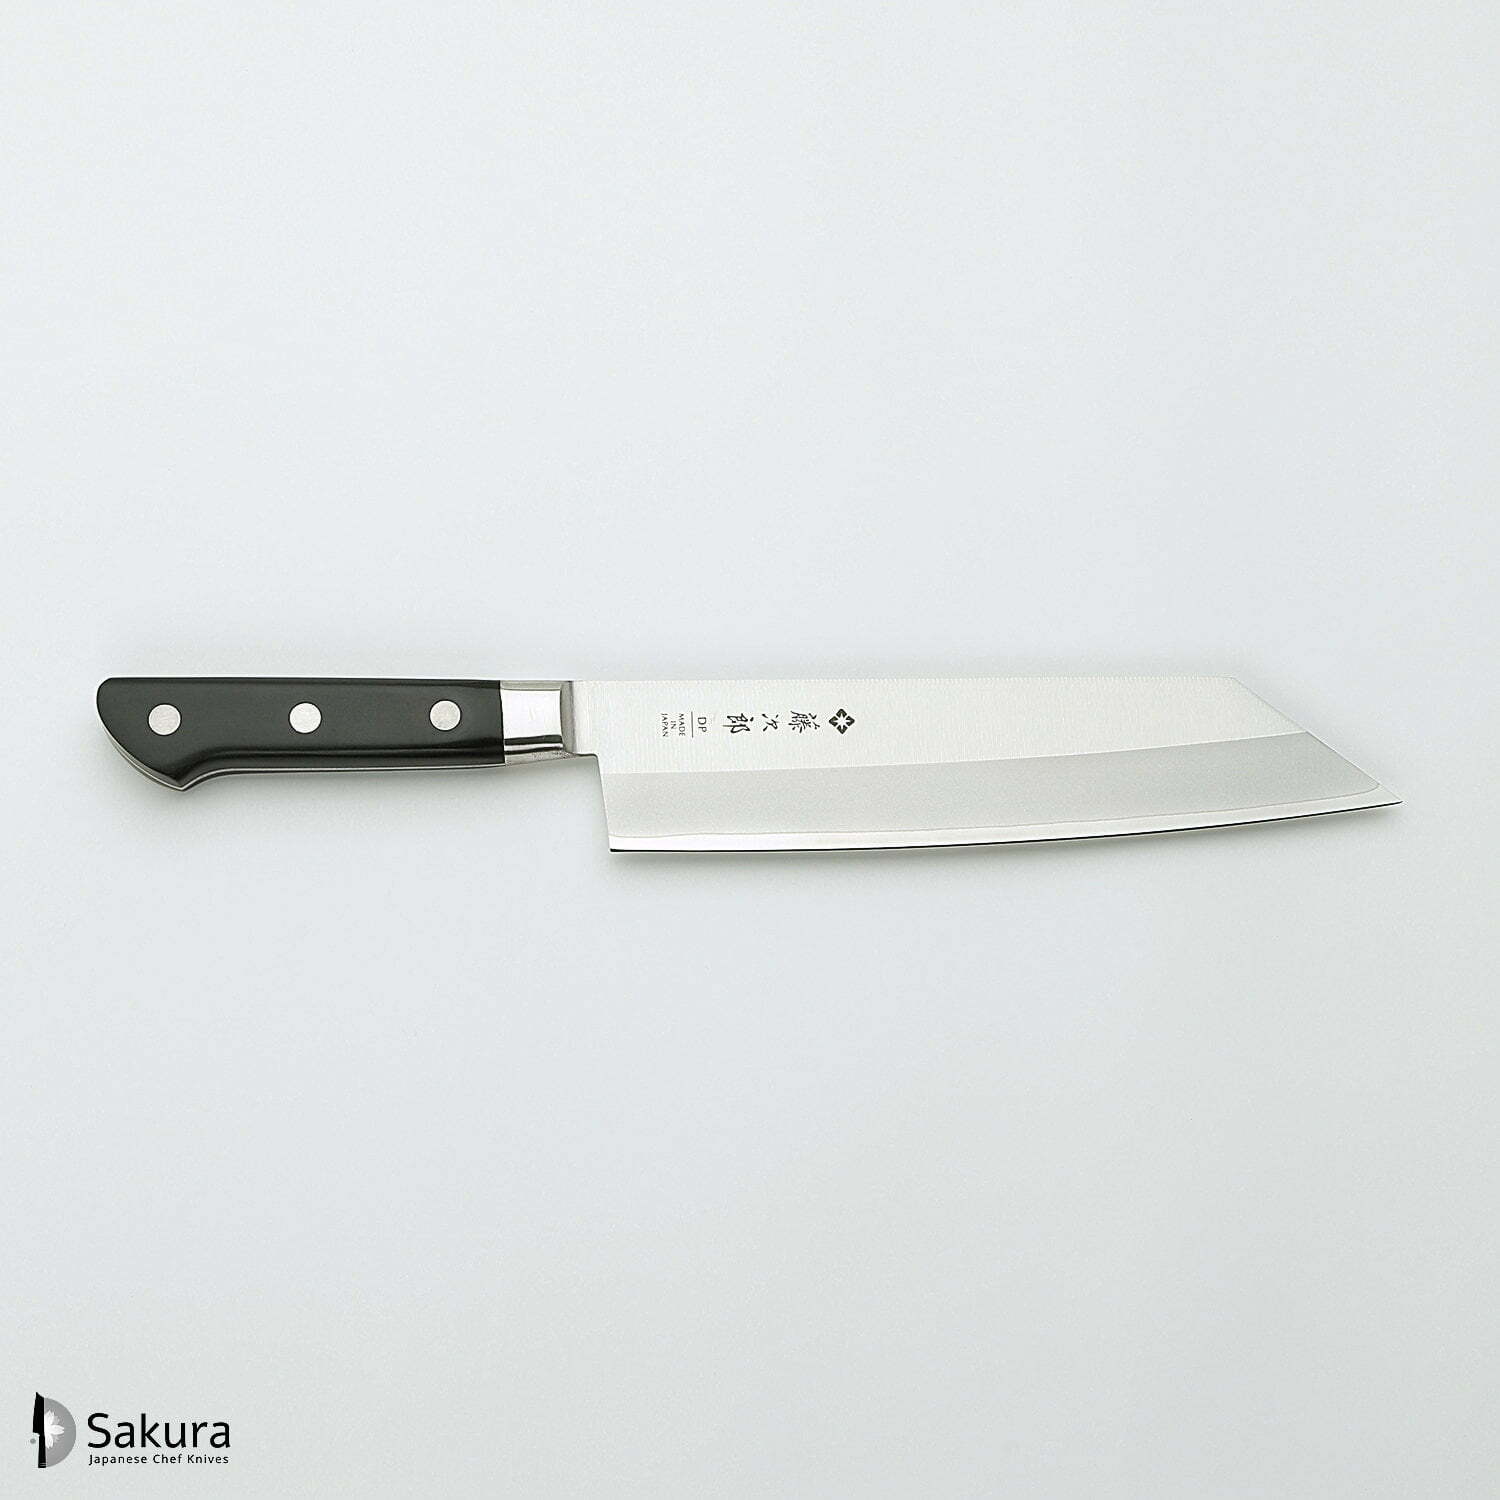 סכין שף רב-תכליתית קִּירִיצוּקֶה 210מ״מ מחוזקת 3 שכבות: פלדת פחמן יפנית VG-10 עטופה פלדת אל-חלד גימור מט מלוטש טוג׳ירו יפן